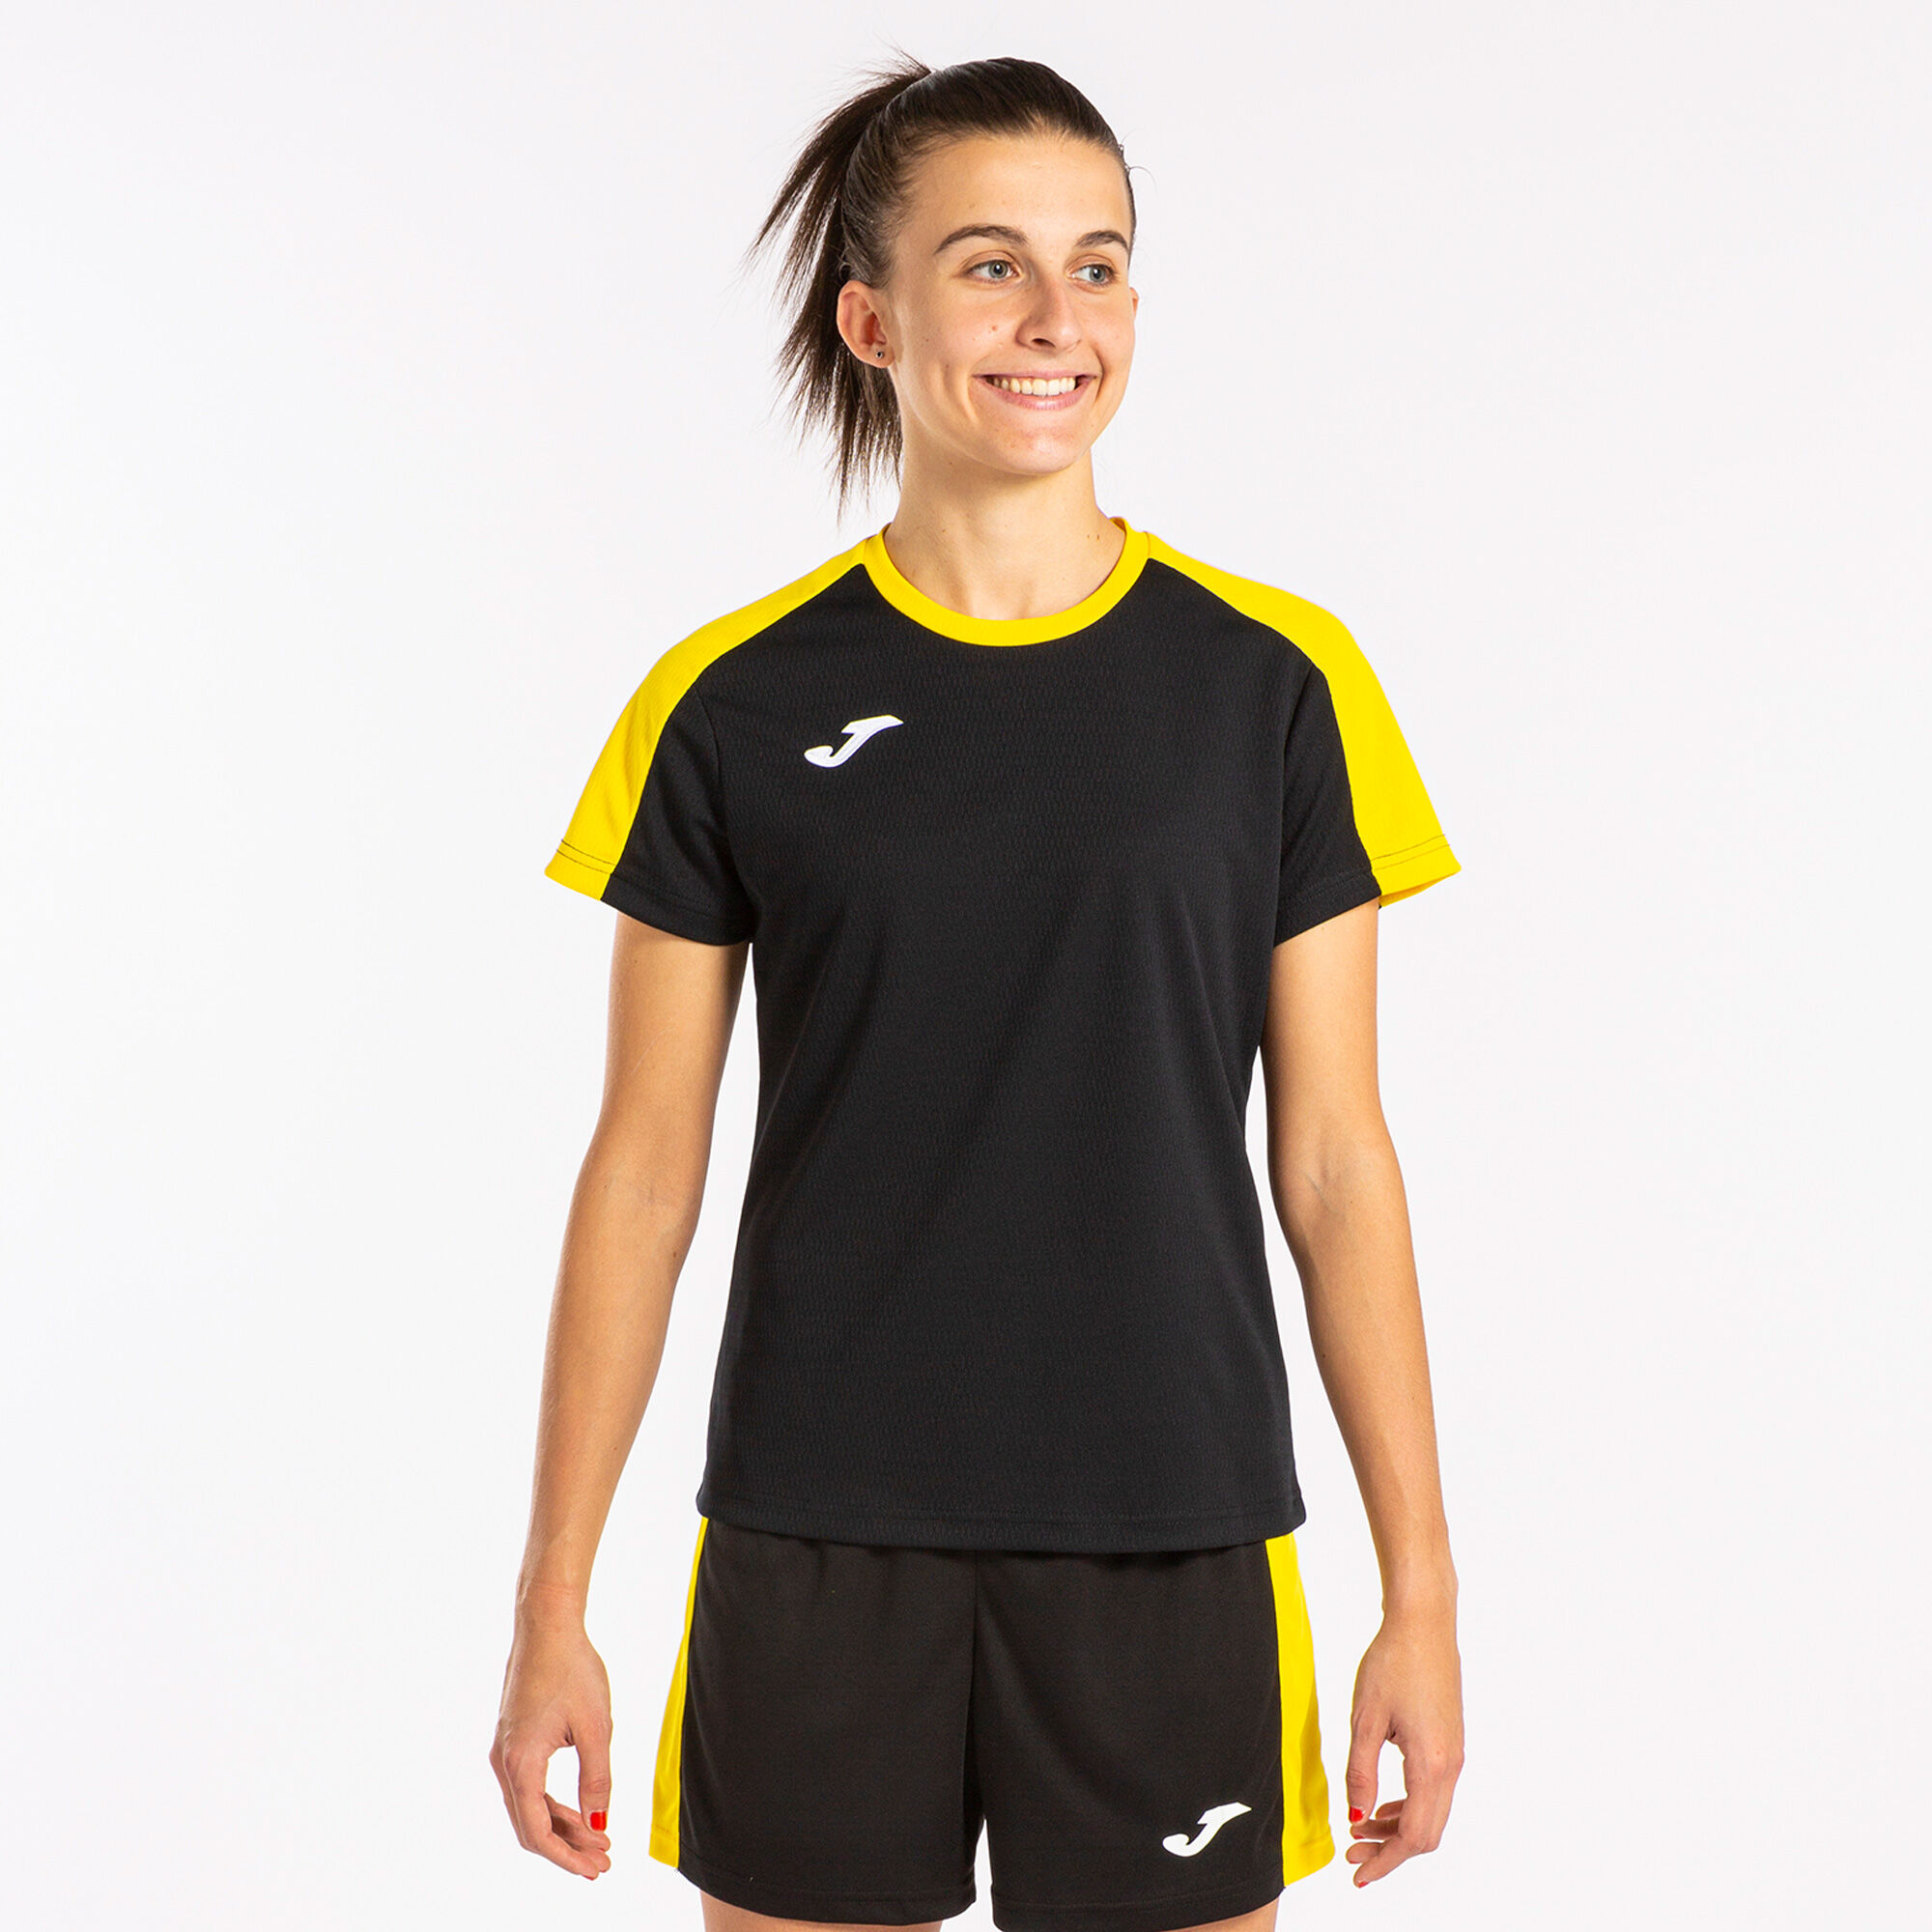 Tricou cu mânecă scurtă damă Eco Championship negru galben